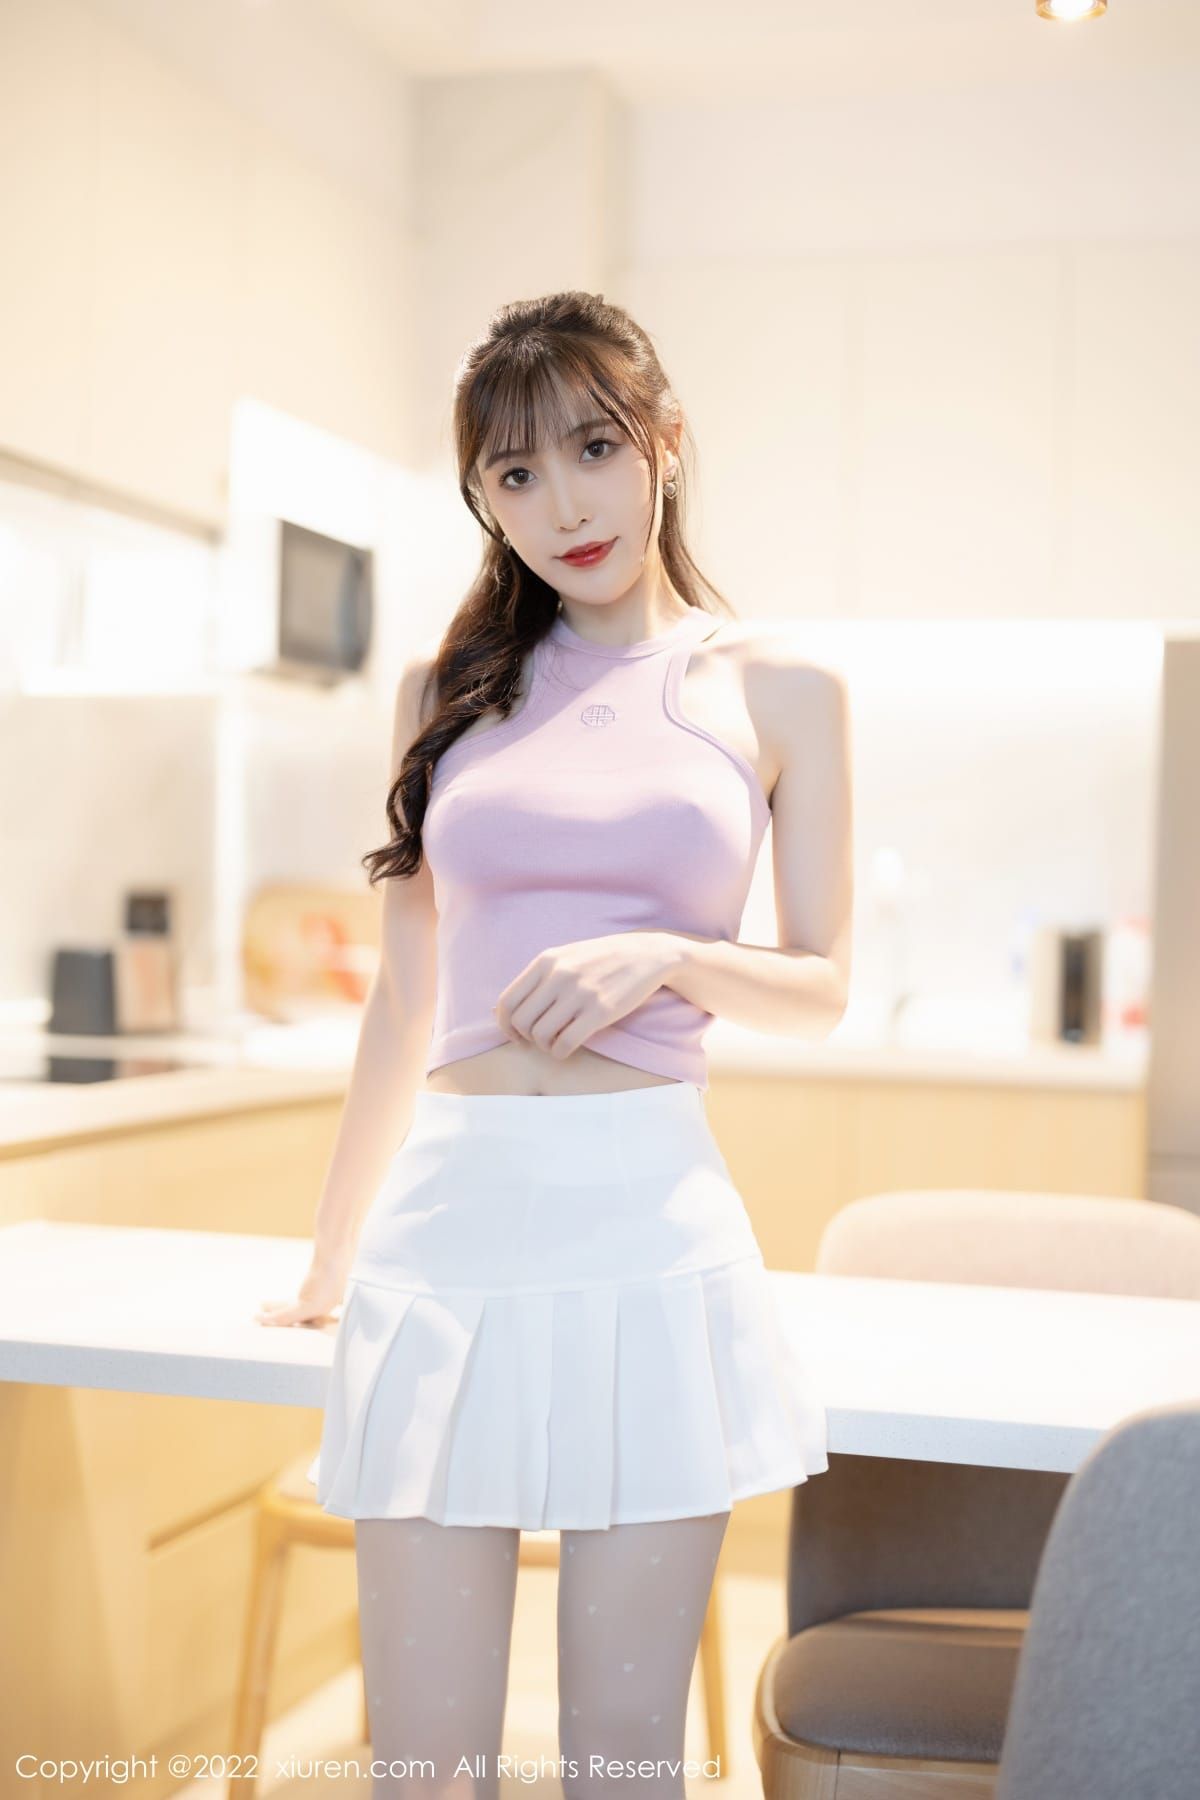 林星阑淡紫色上衣搭配白色短裙诱人写真